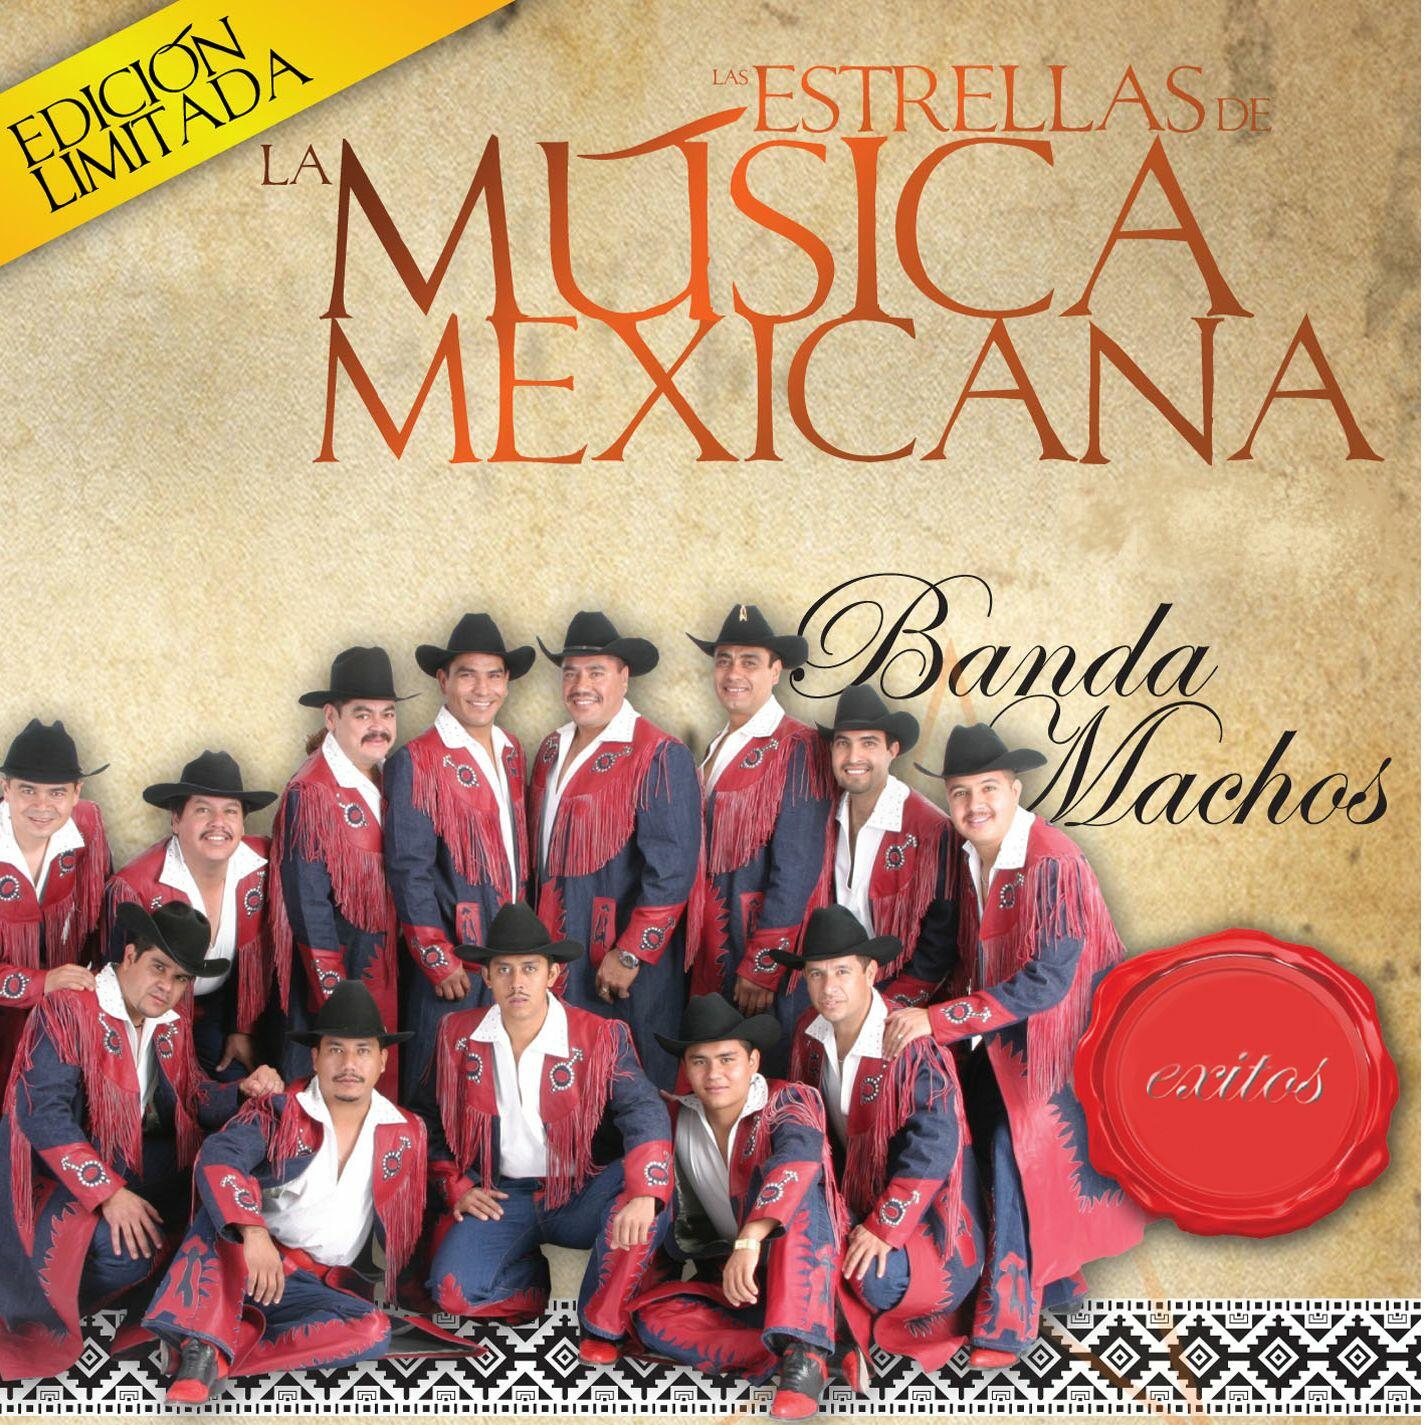 Banda Machos Las Estrellas de la Musica Mexicana iHeartRadio